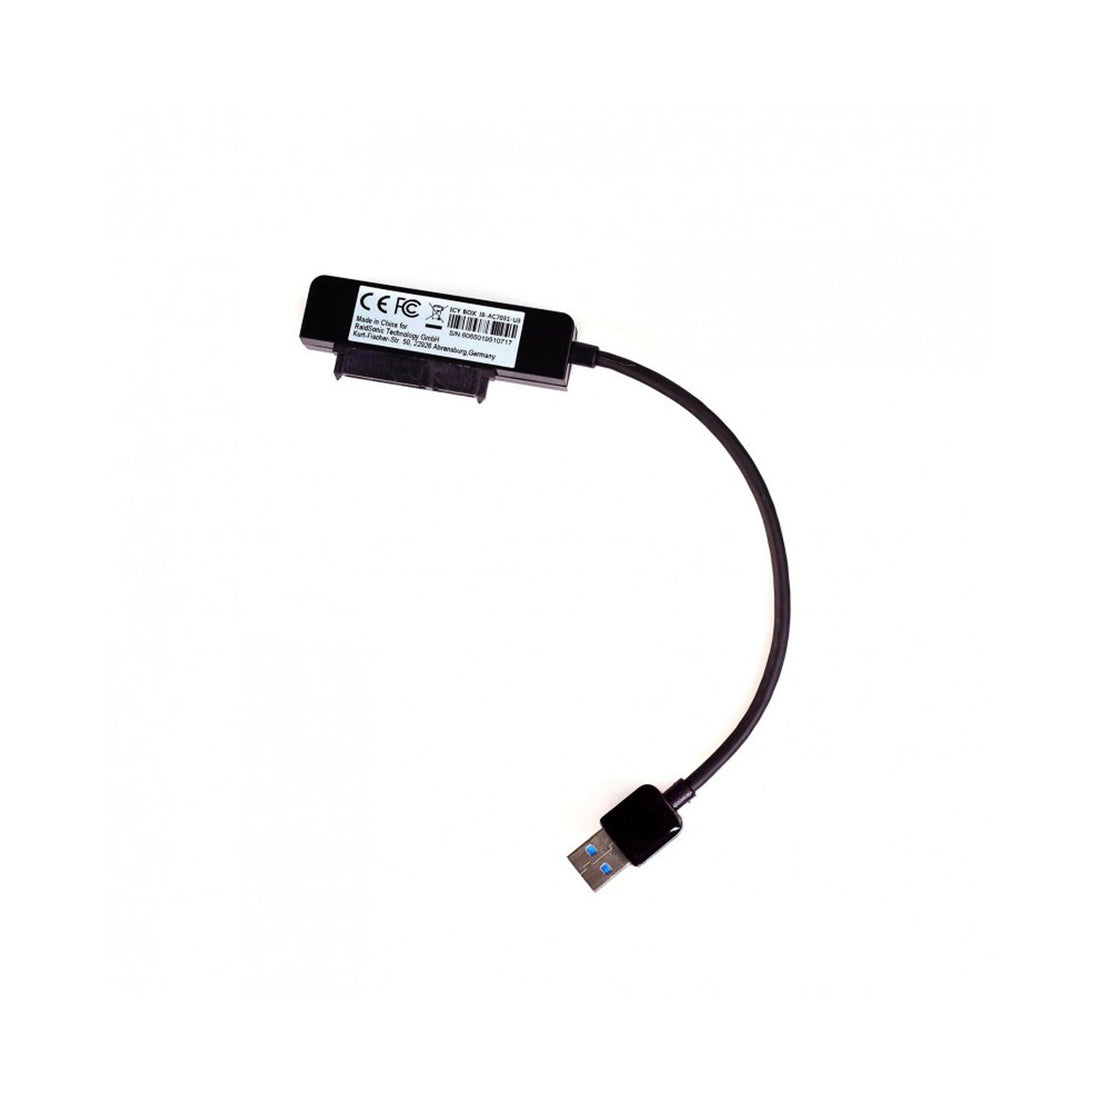 Vantec USB 3.0 to SATA Adapter for 2.5" SSD - 6Gb/S (CB-STU3-2PB)